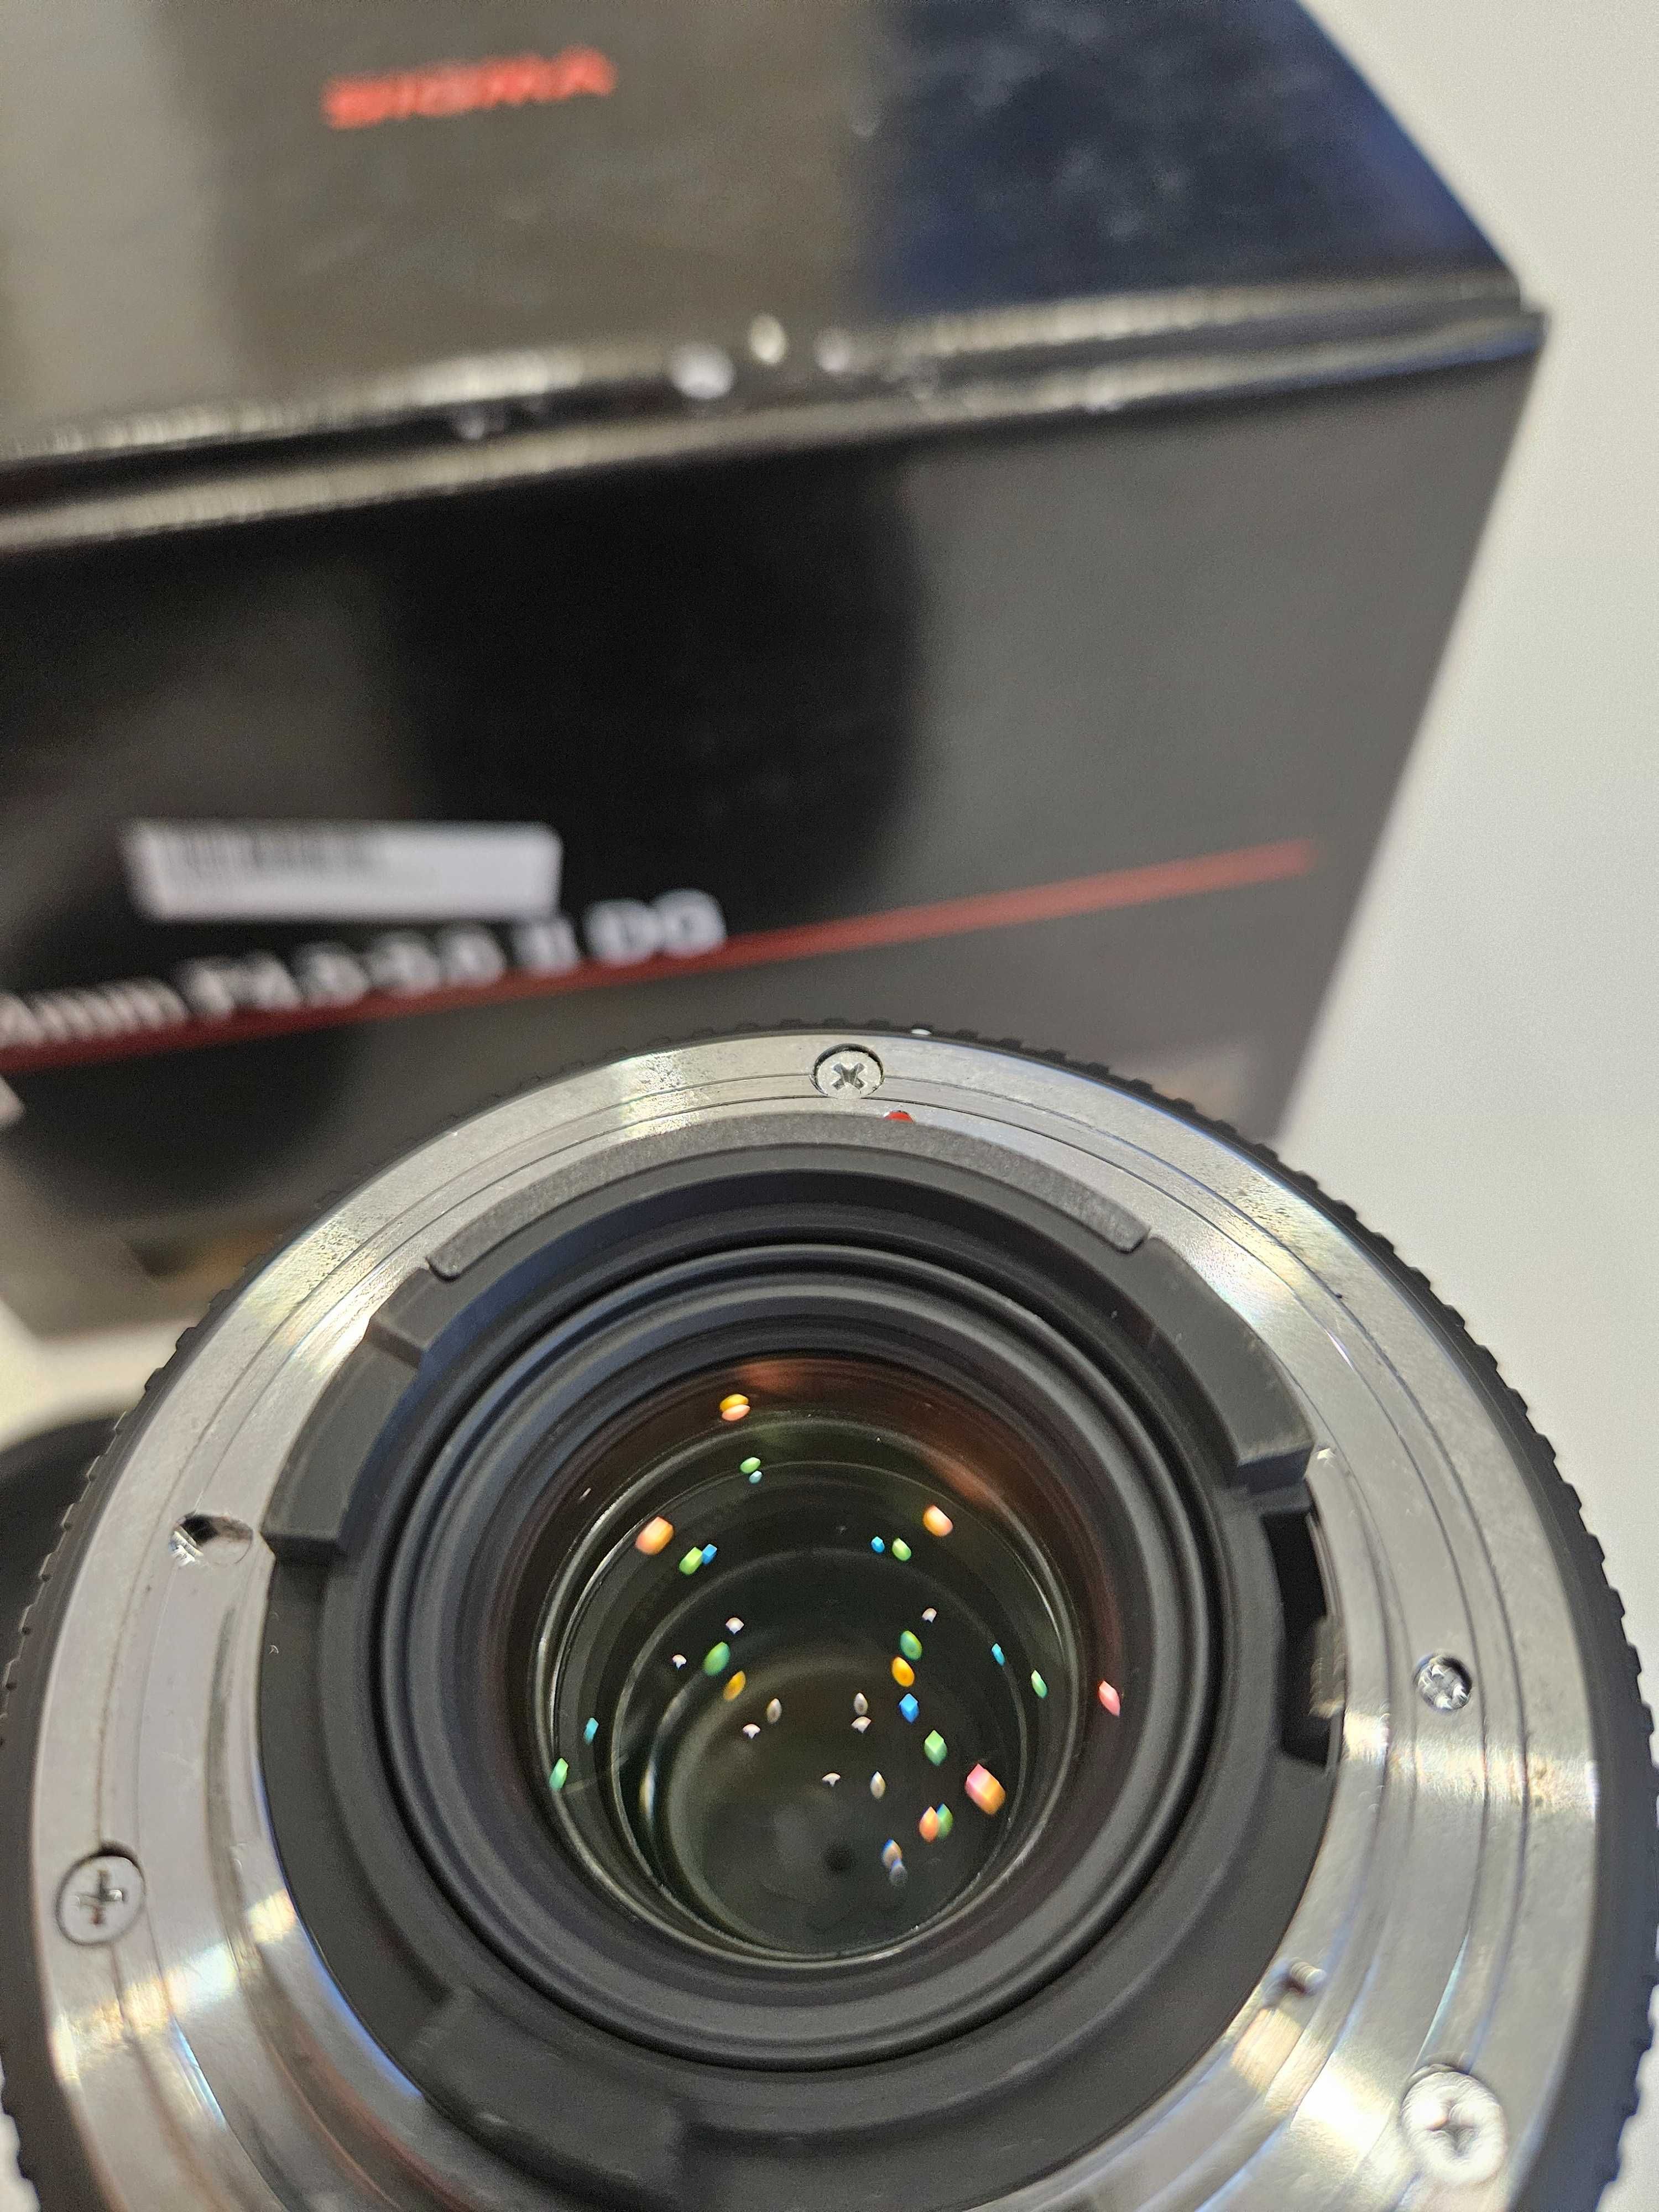 Objetiva Sigma 12-24mm F4.5-5.6ll DG Ultra grande angular para Nikon.